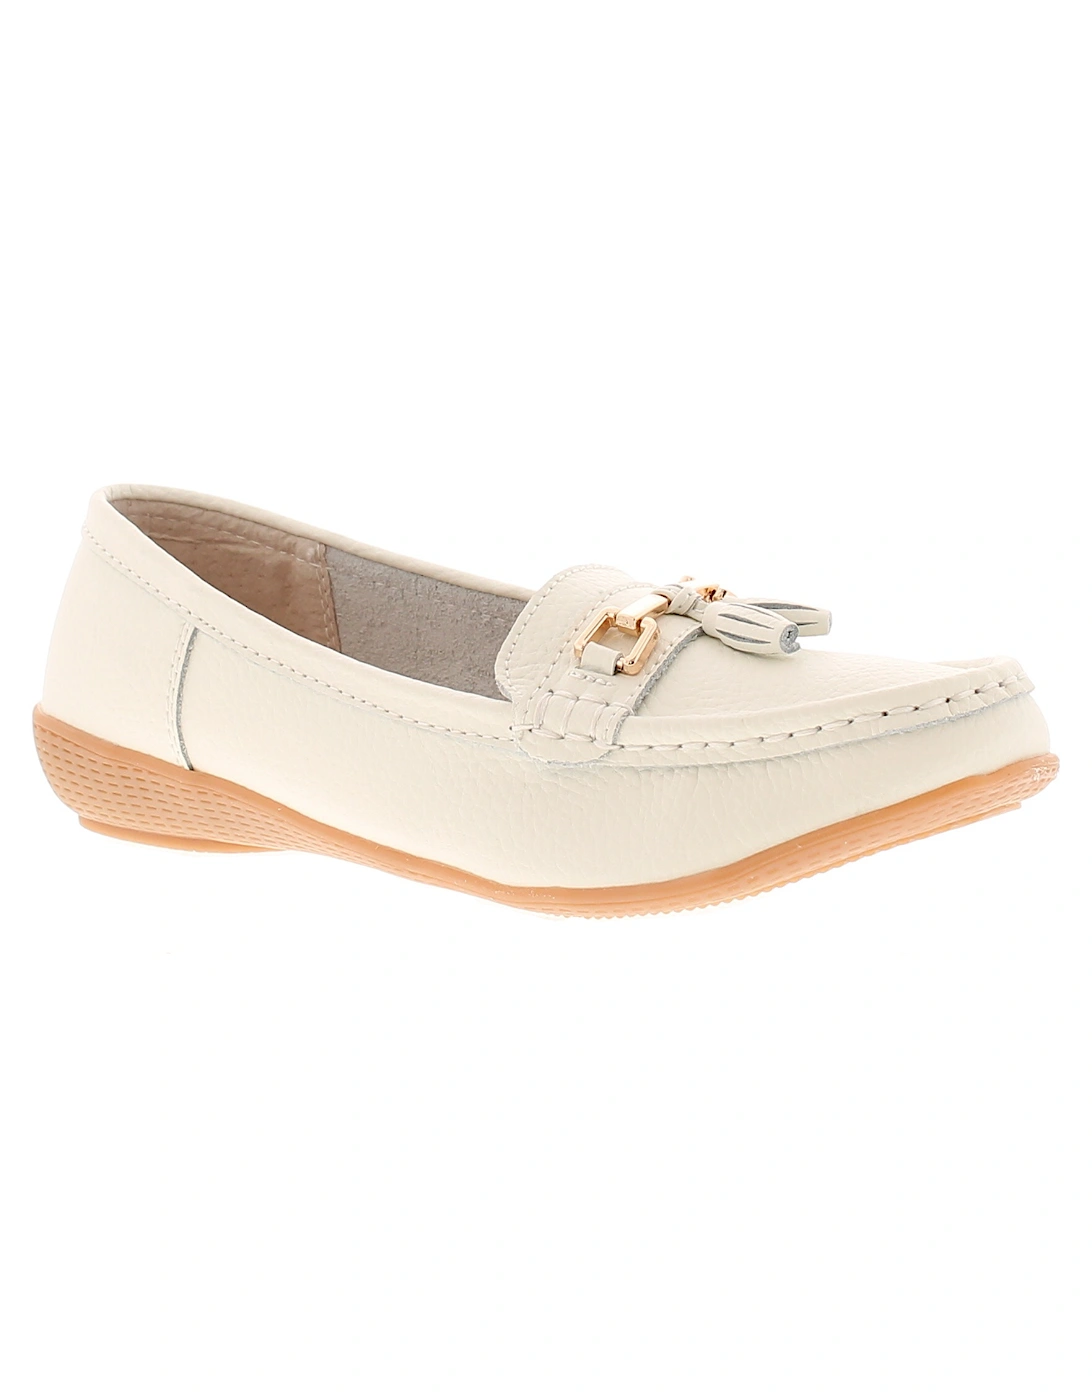 Womens Flat Shoes nautical leather Slip On white UK Size, 6 of 5